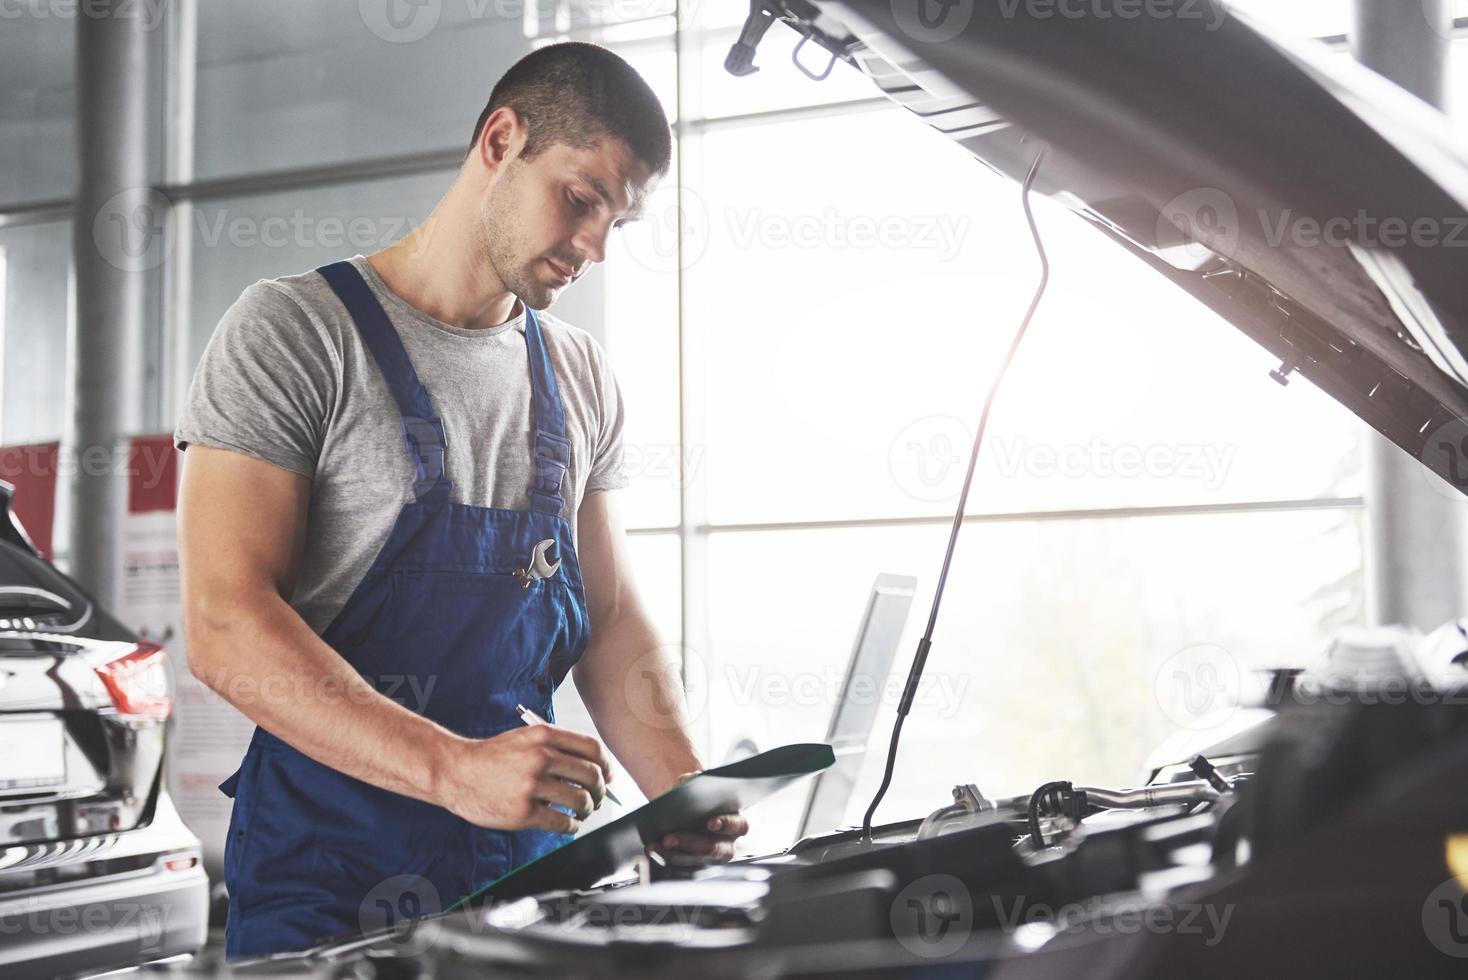 porträt eines mechanikers bei der arbeit in seiner garage - autoservice, reparatur, wartung und menschenkonzept foto